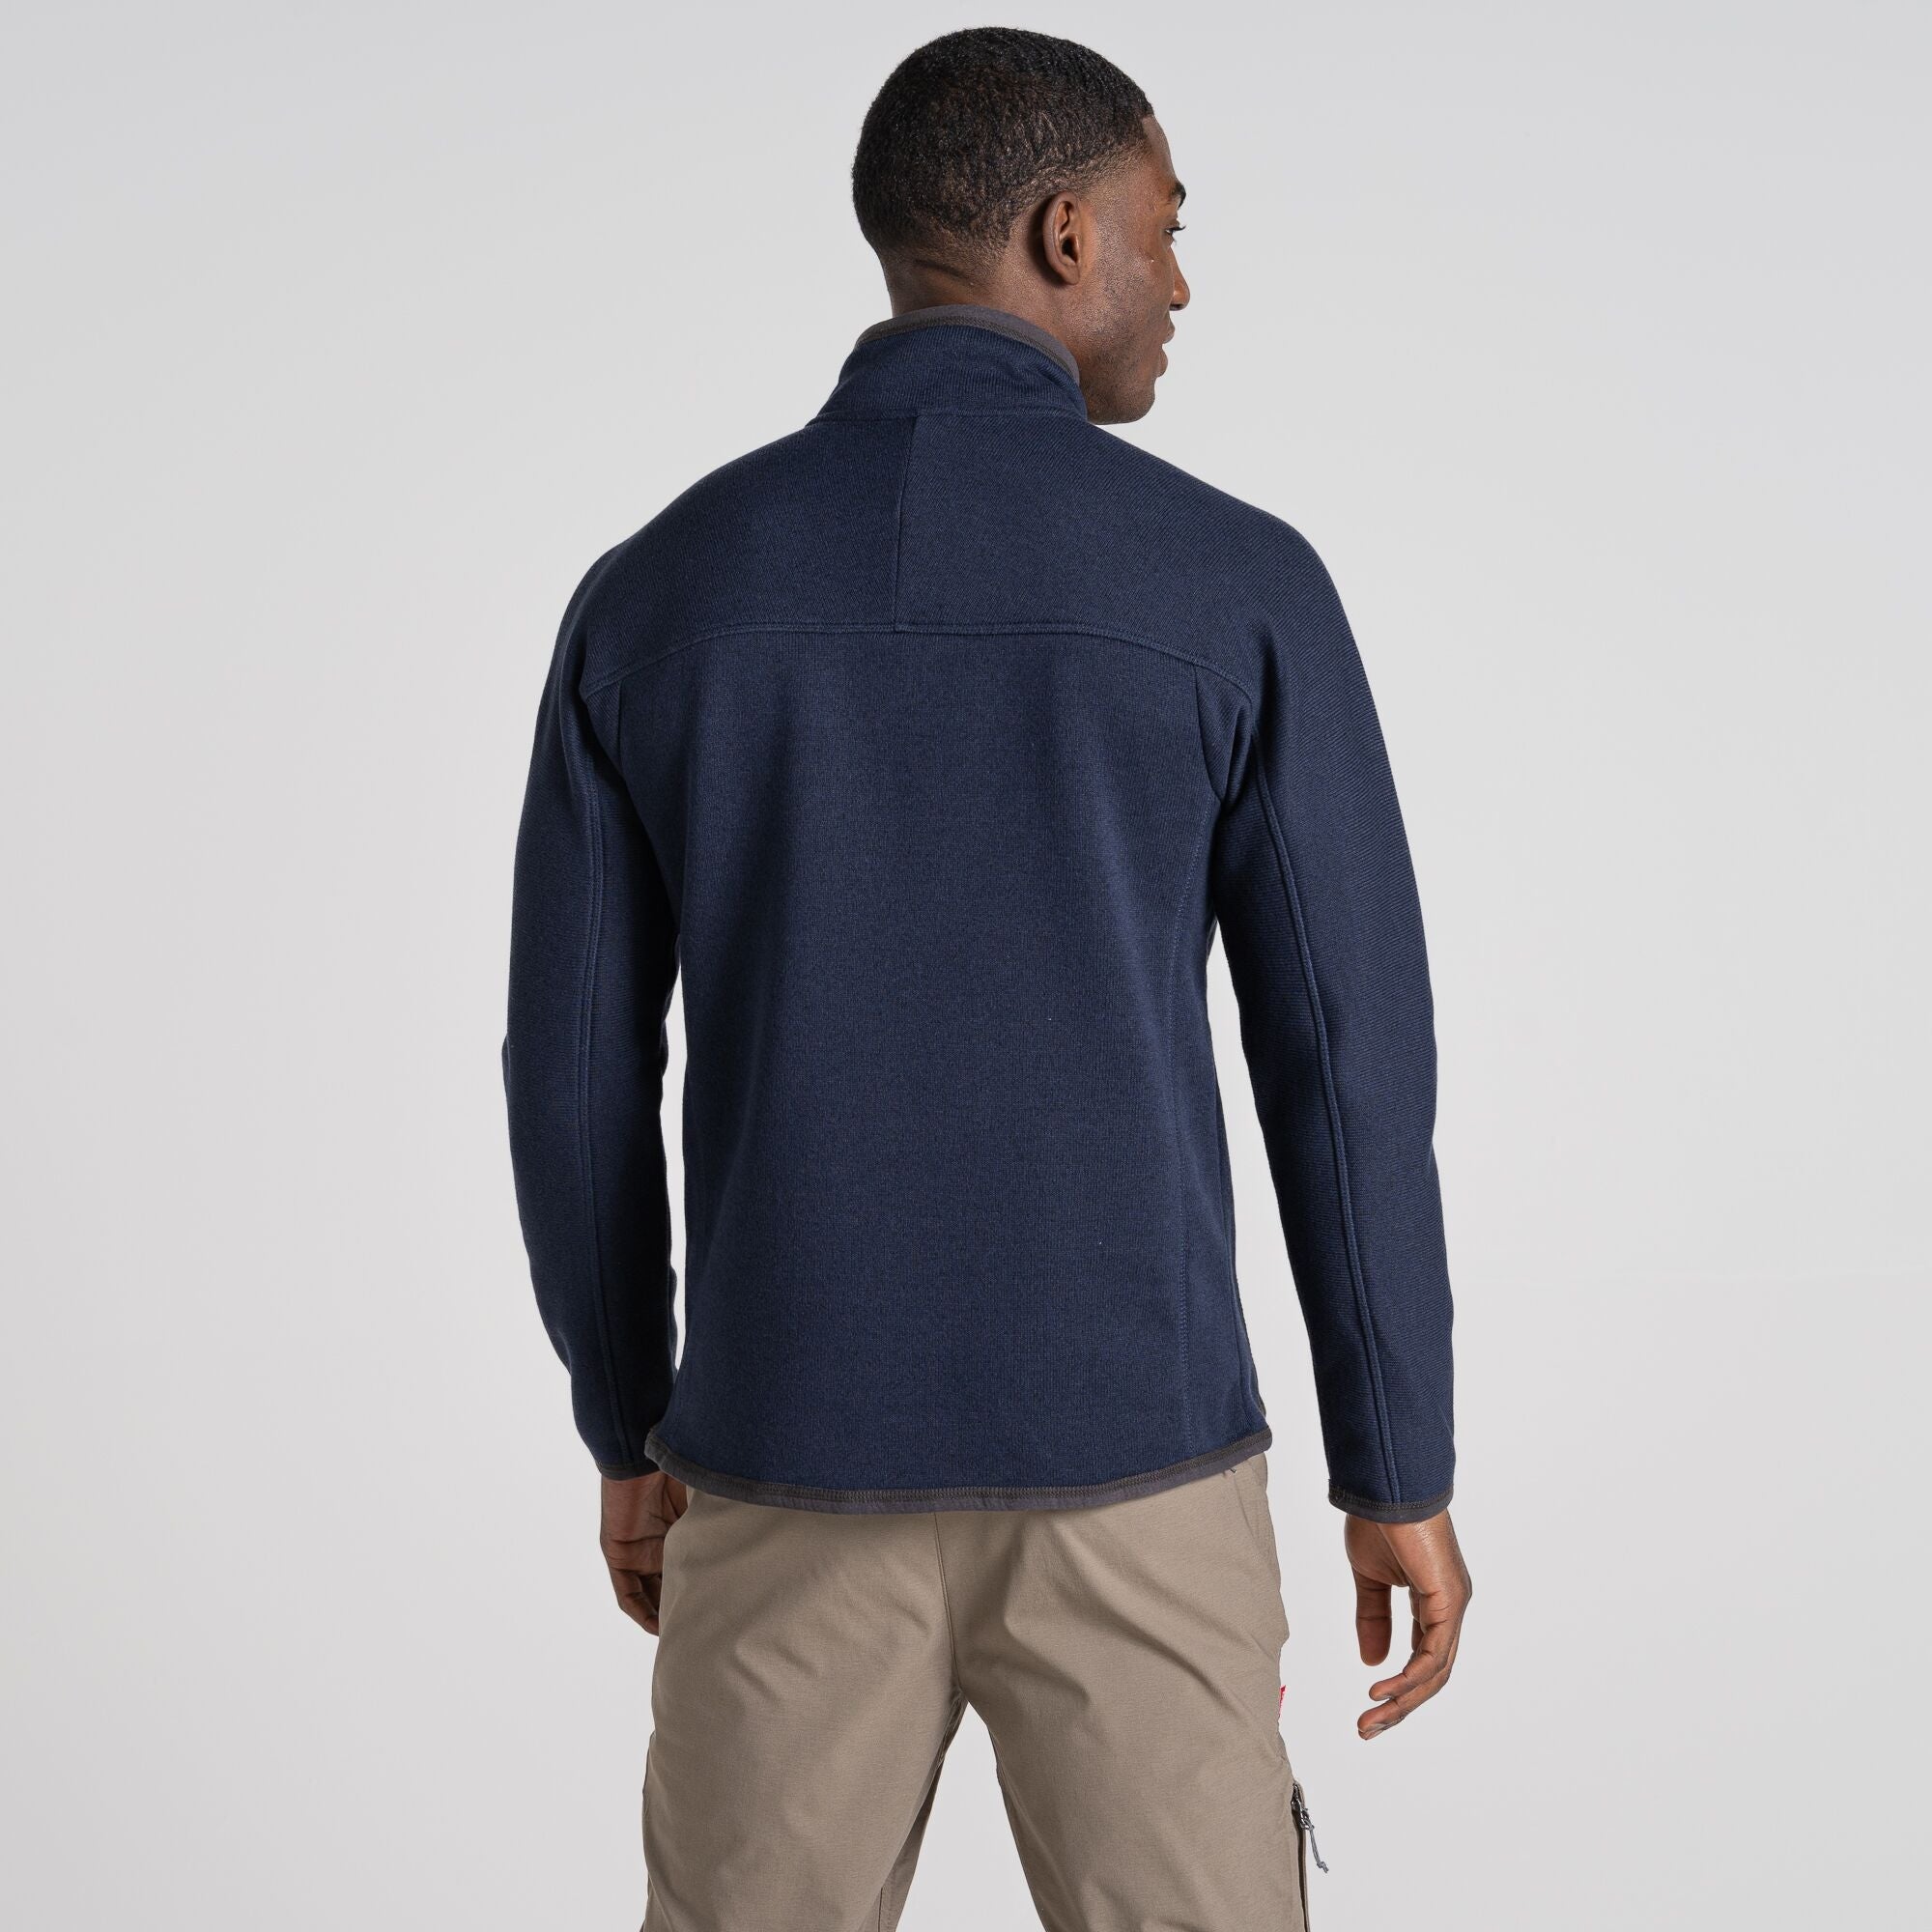 Men's Torney Half Zip Fleece | Blue Navy Marl/Quartz Grey